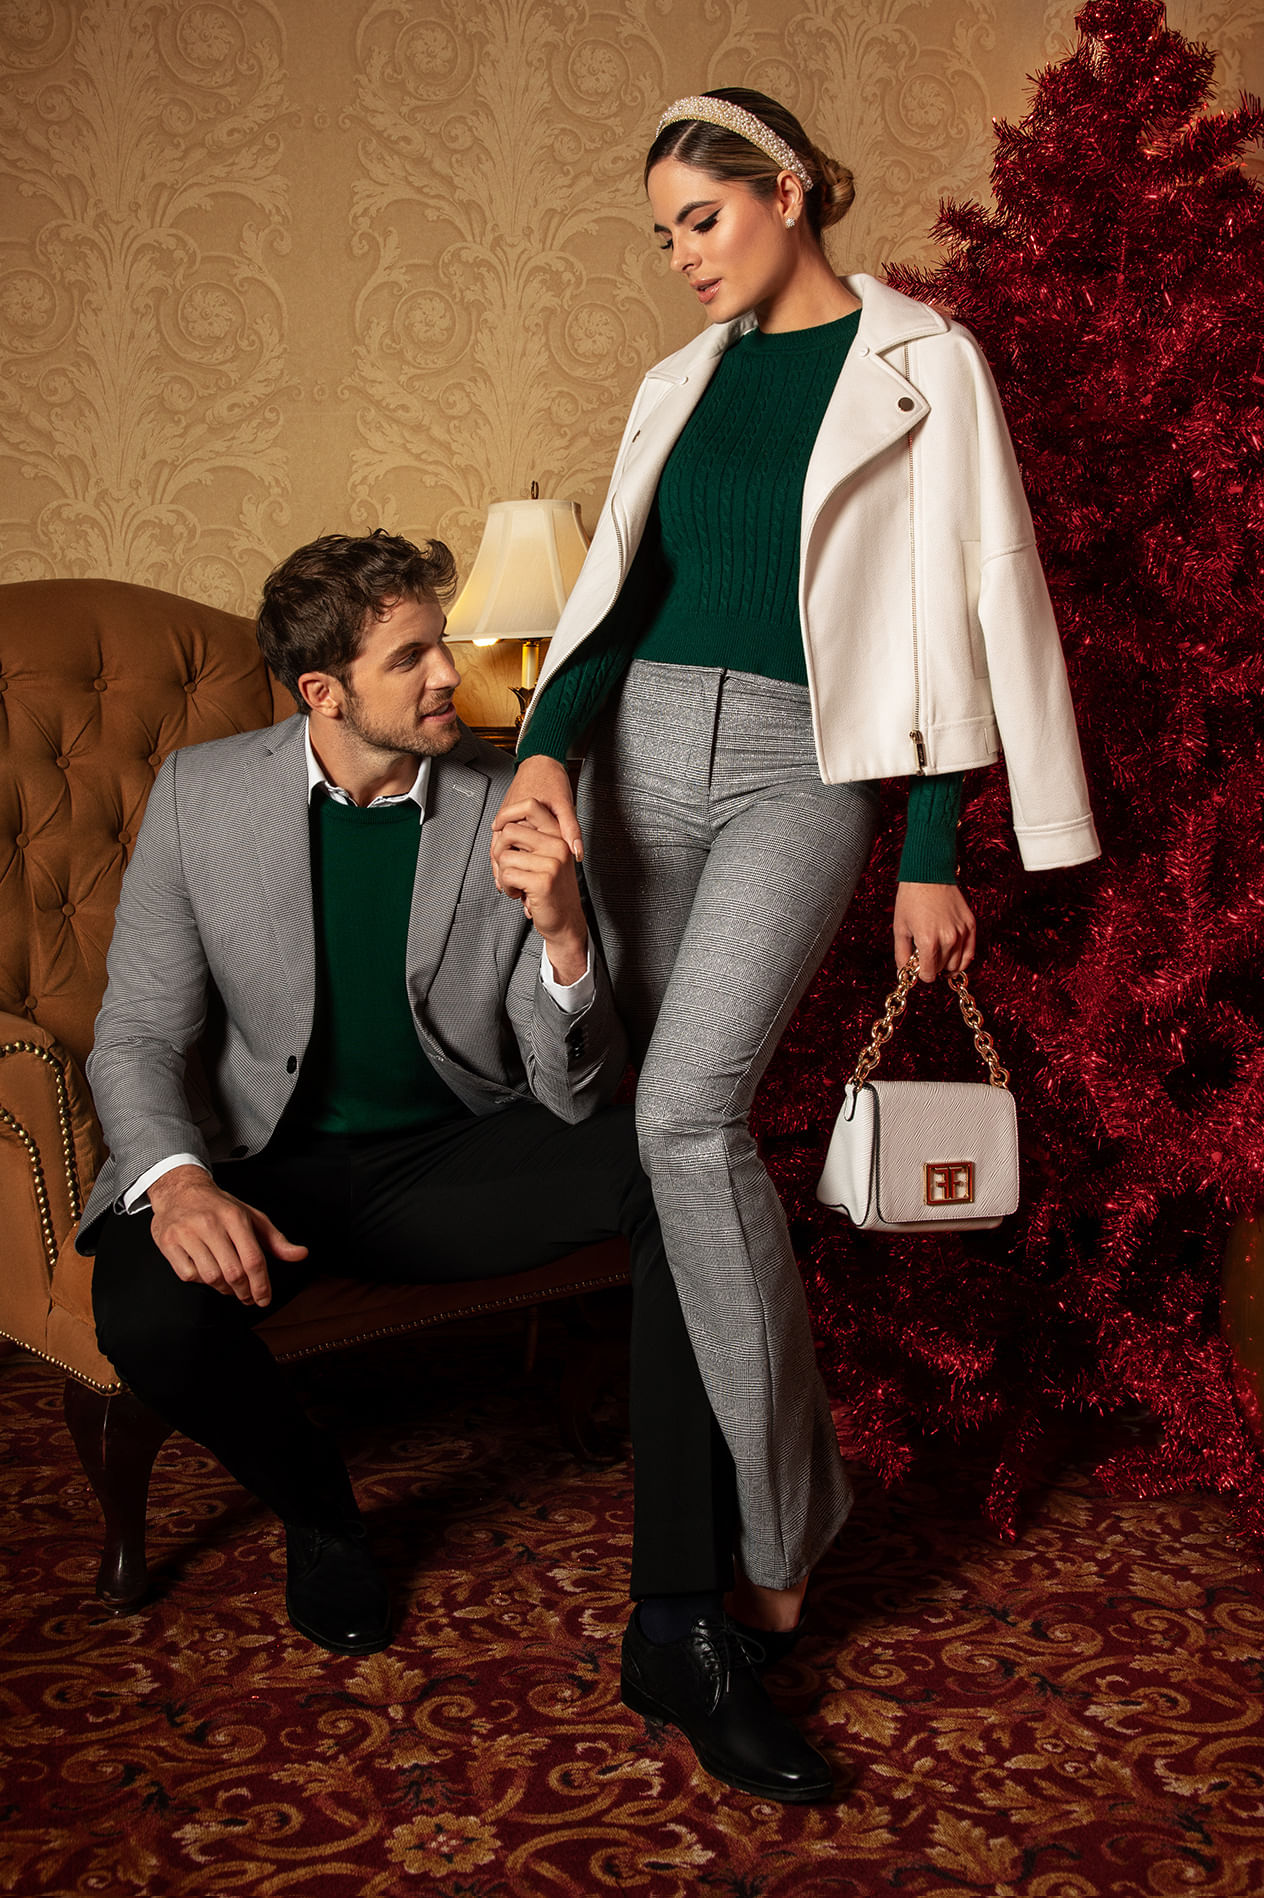 Pareja de hombre y mujer usando look para navidad: blazer blanco, suéter color verde, pantalón gris y bolsa de mano color blanco